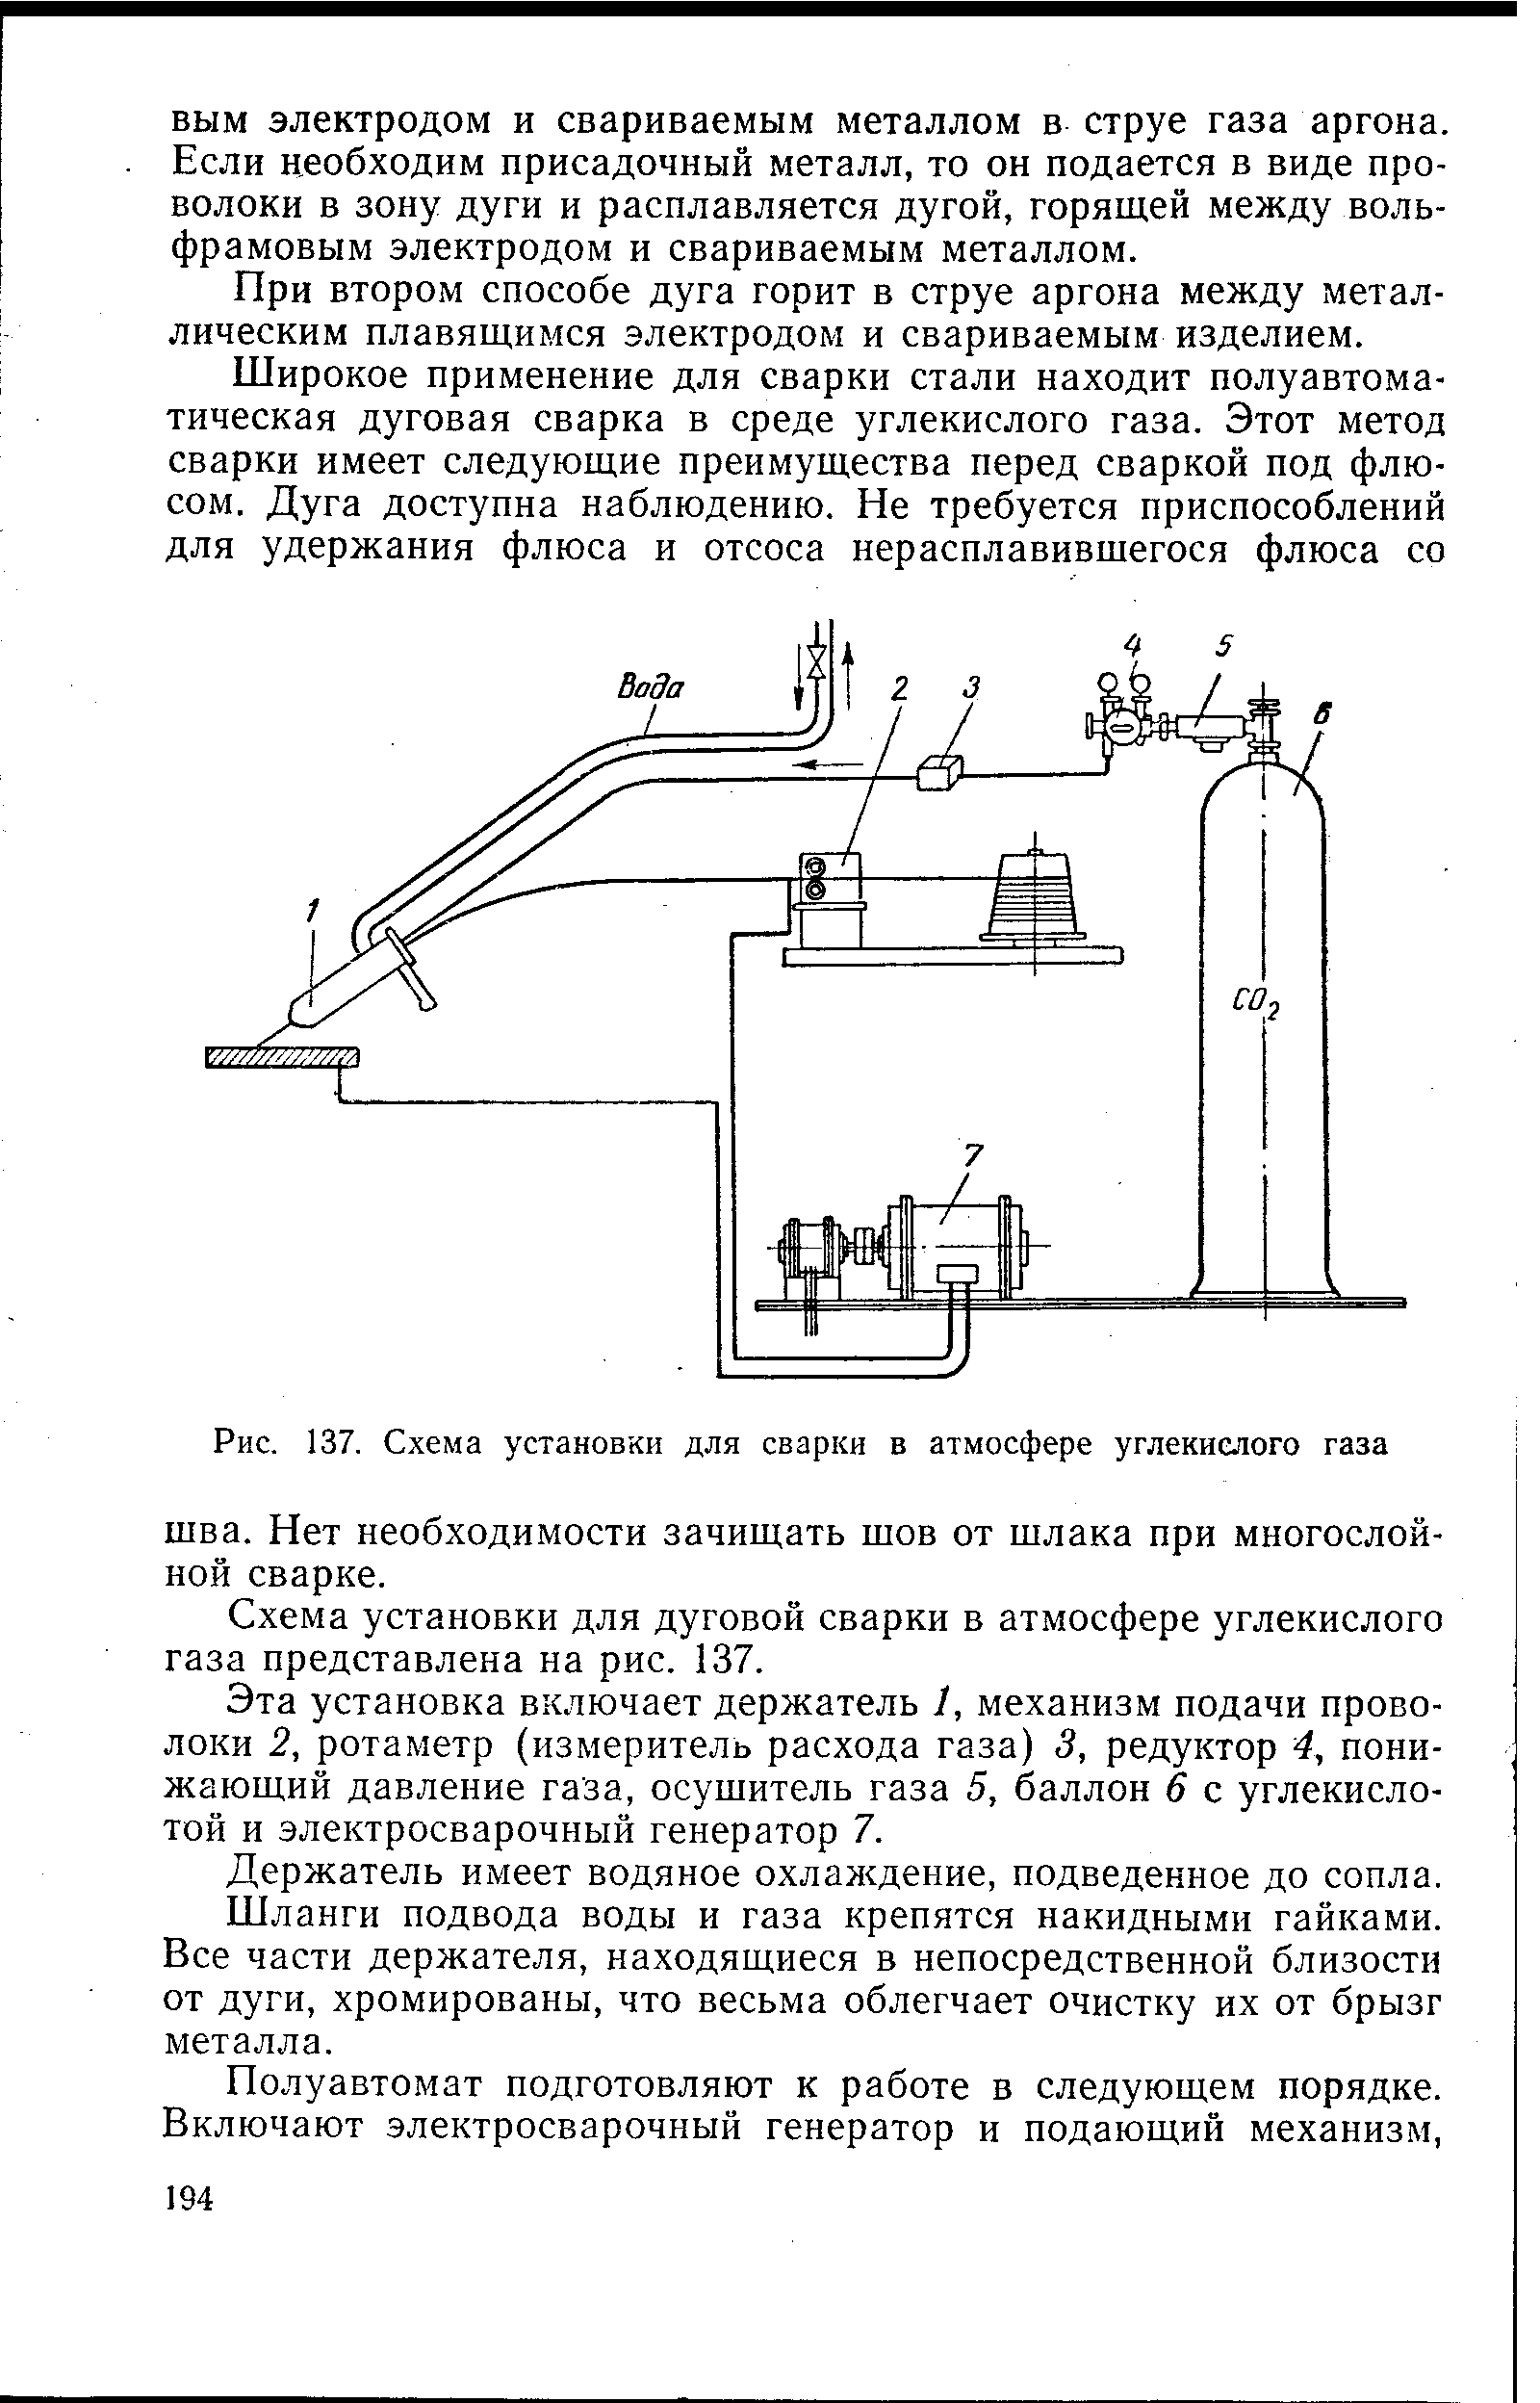 Рис. 137. Схема установки для сварки в атмосфере углекислого газа
